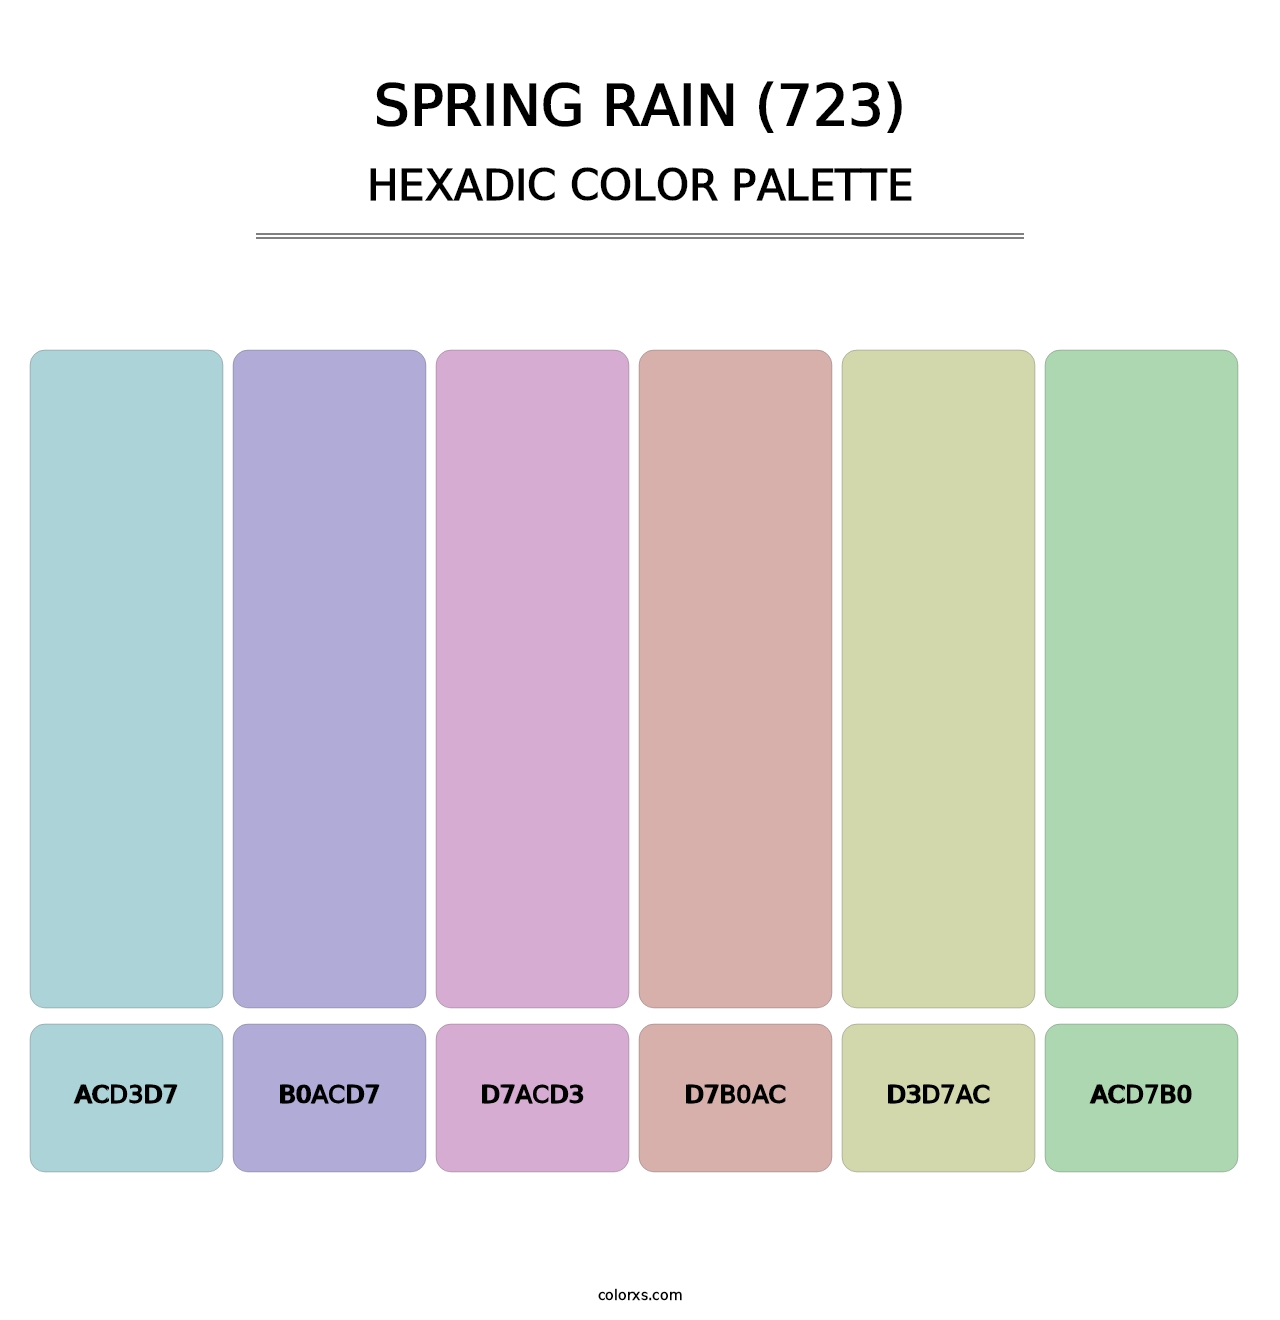 Spring Rain (723) - Hexadic Color Palette